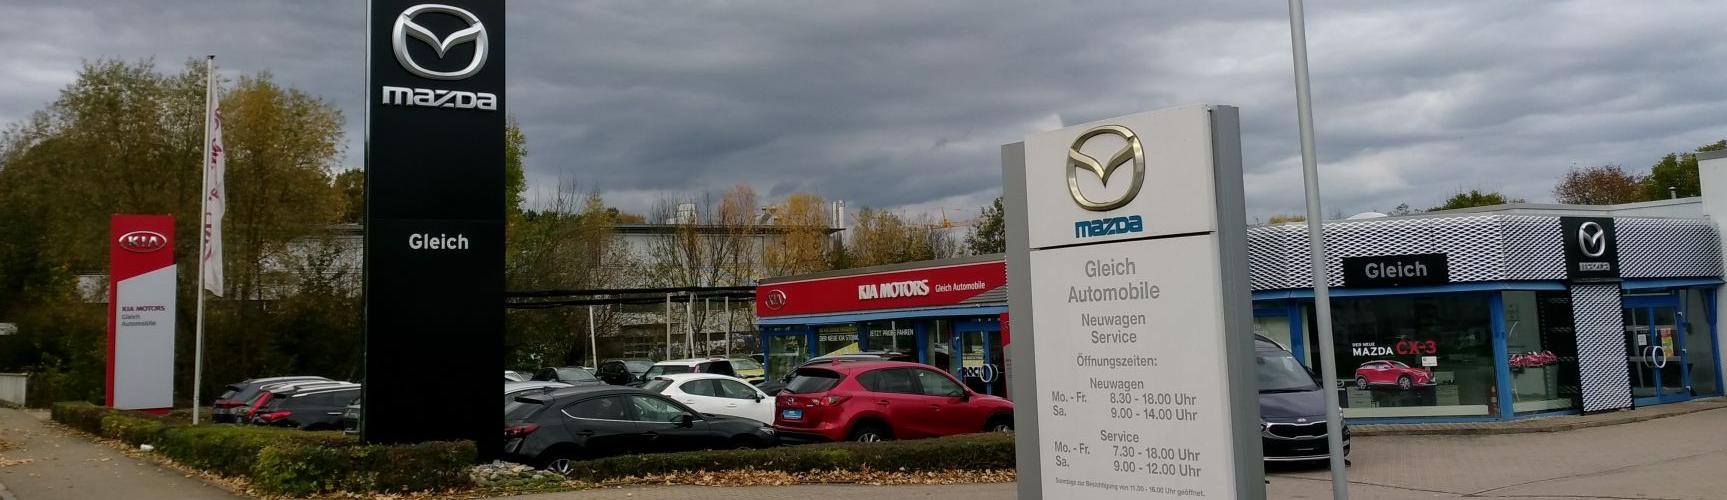 Bild 2 Gleich Automobile GmbH Mazda und Kia Vertragshändler in Reutlingen